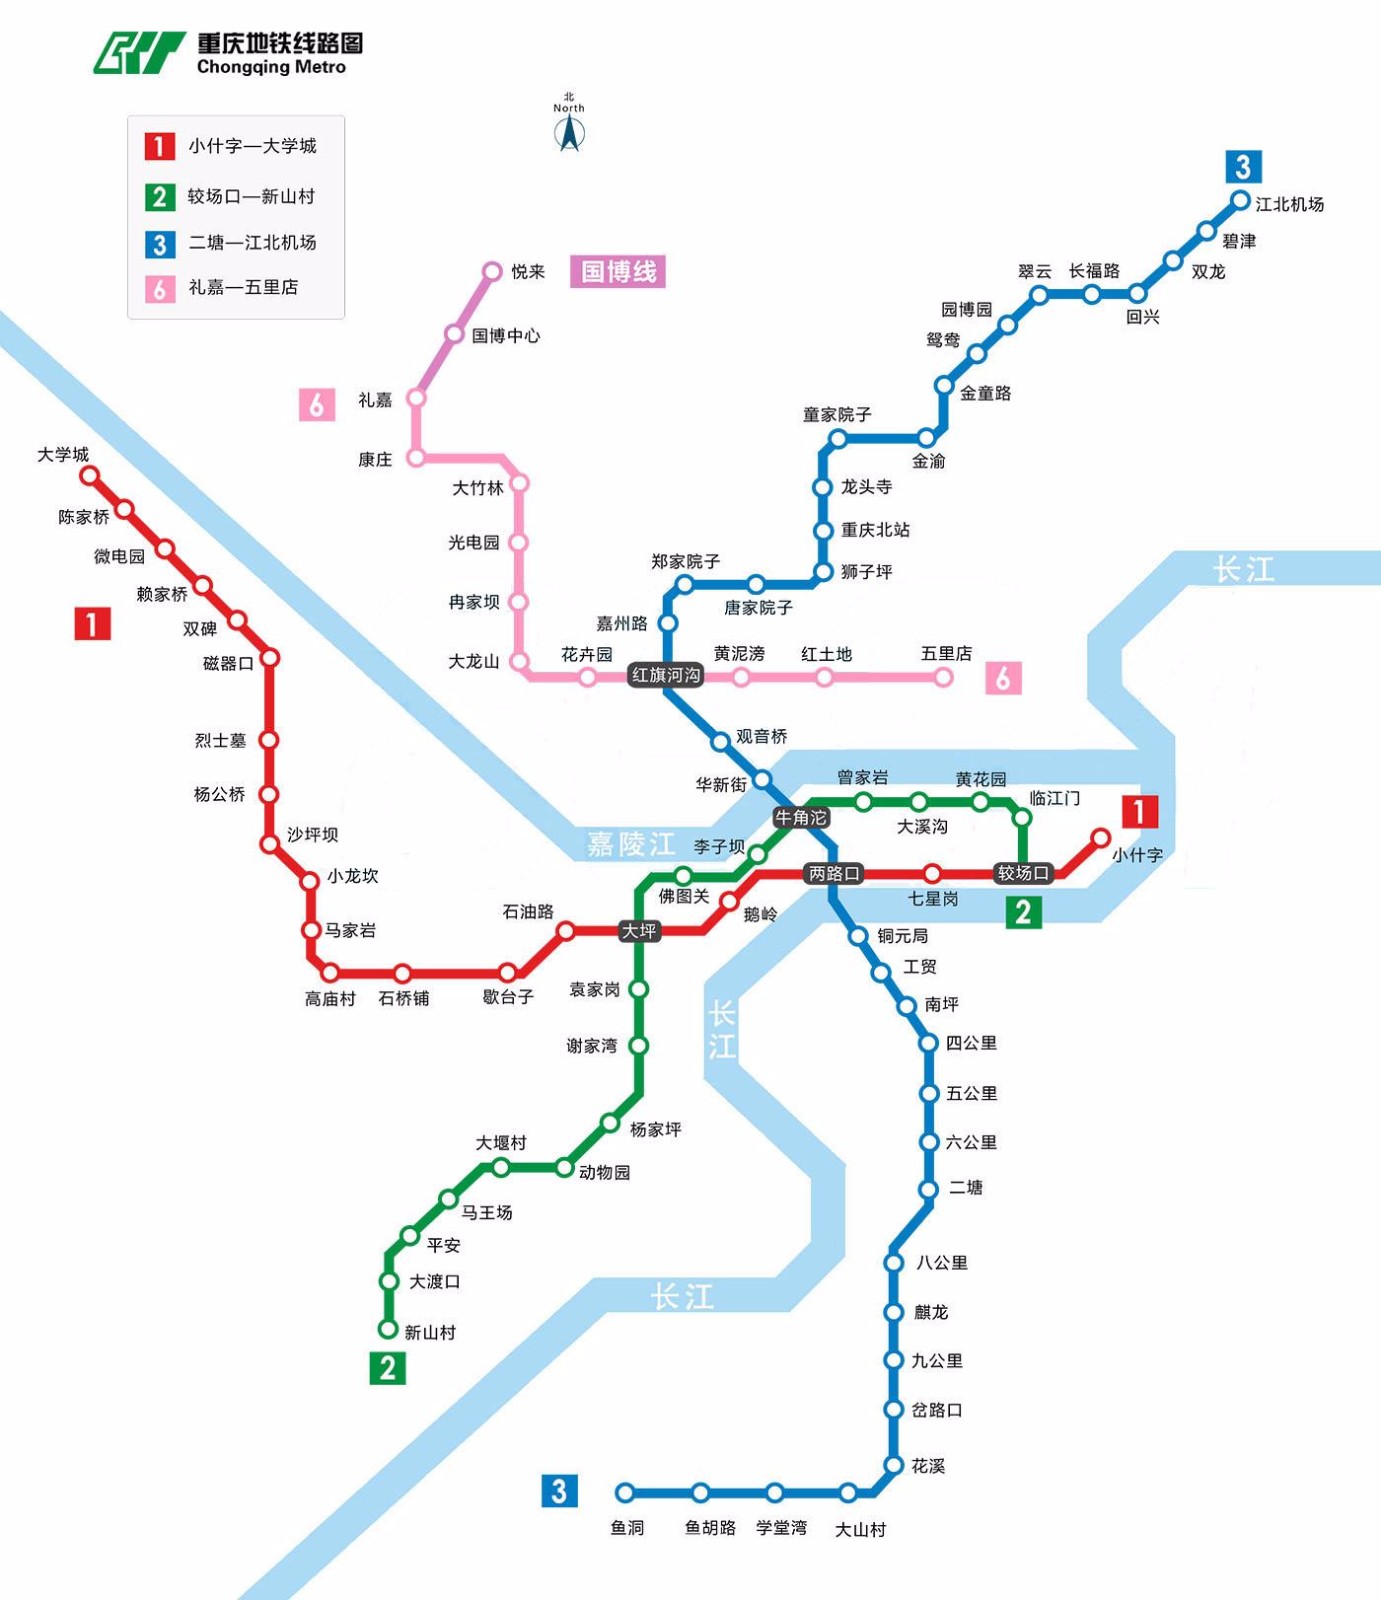 想去重庆玩先规划路线想知道最新的重庆轻轨图（关于增加重庆地铁线路图的建议）